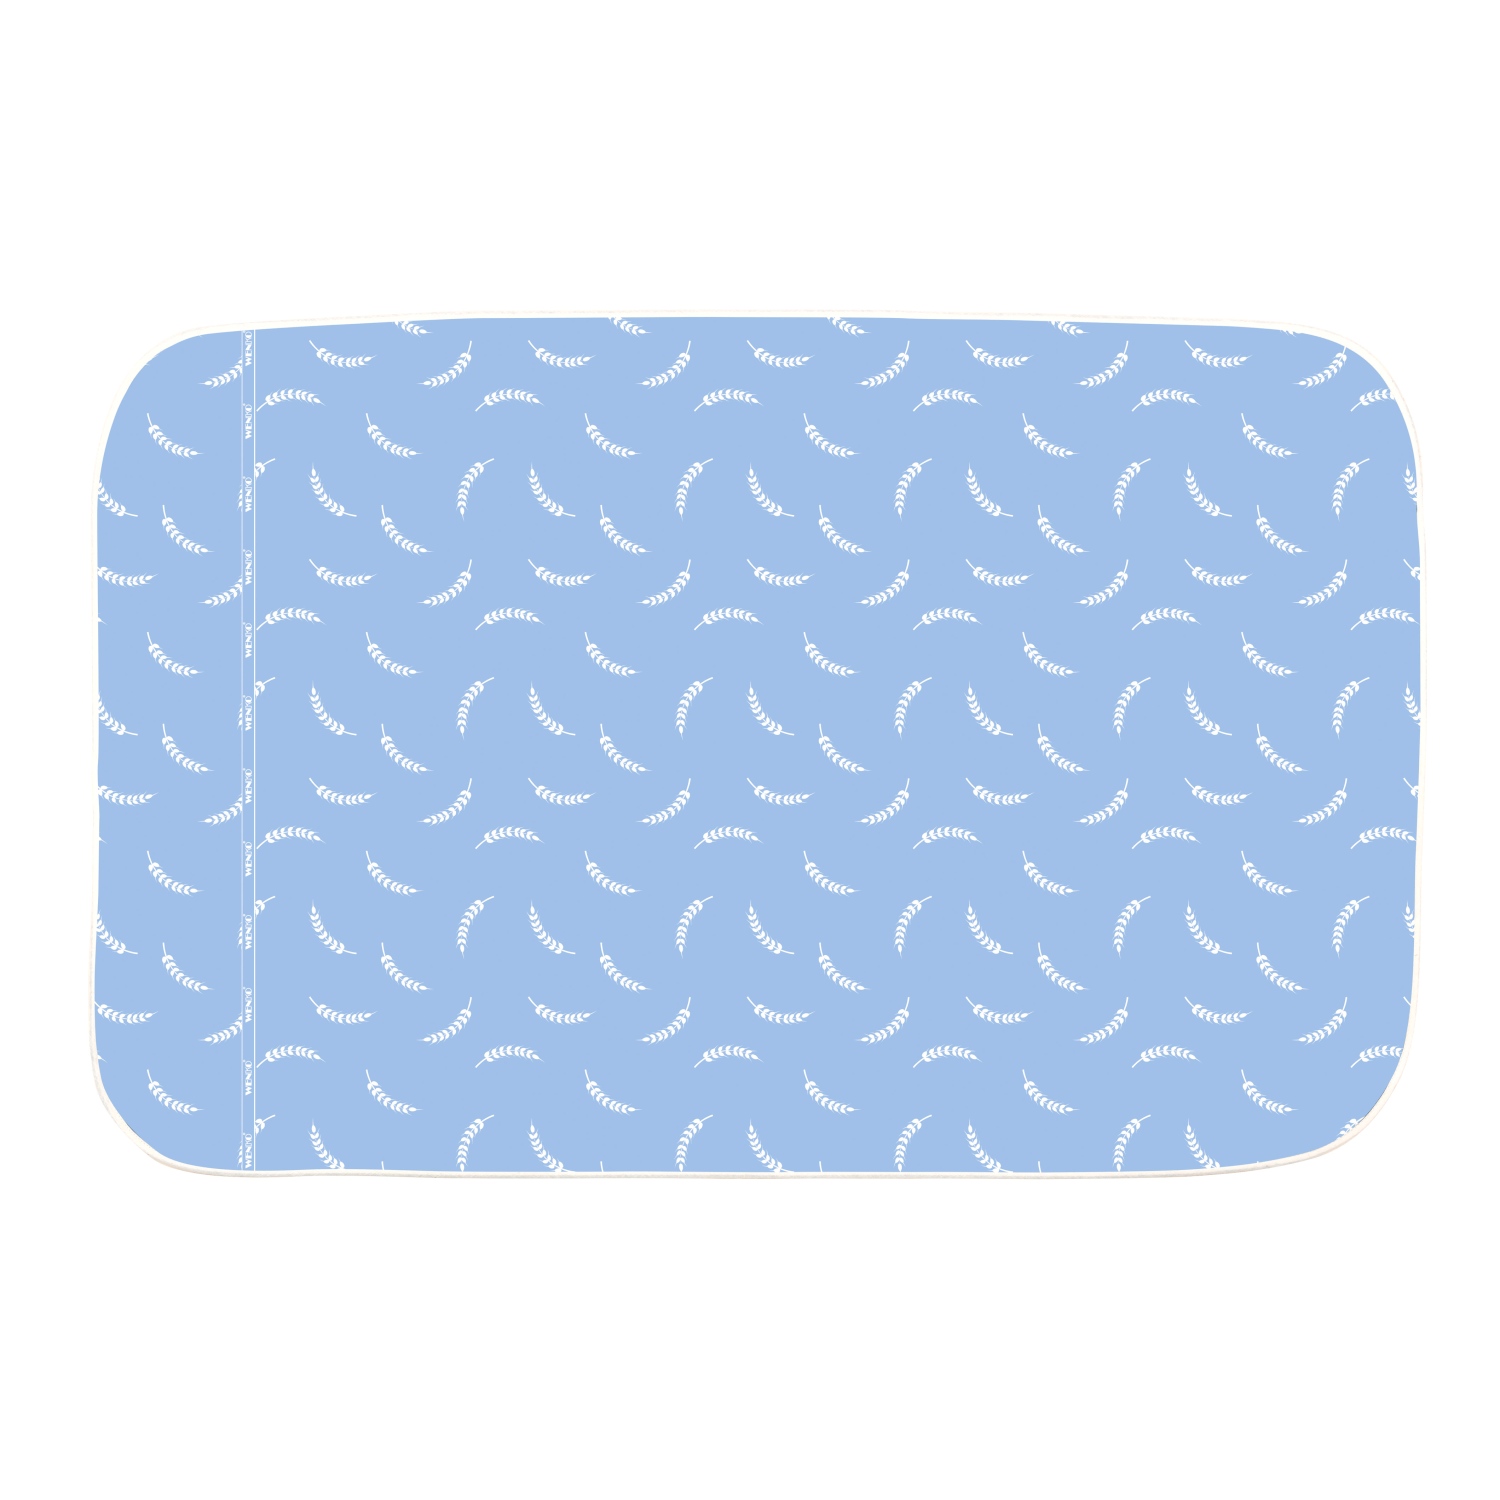 Wenko Bügeldecke AIR Comfort (130 x 65 cm/ blau/ weiß) | Nähwelt Flach